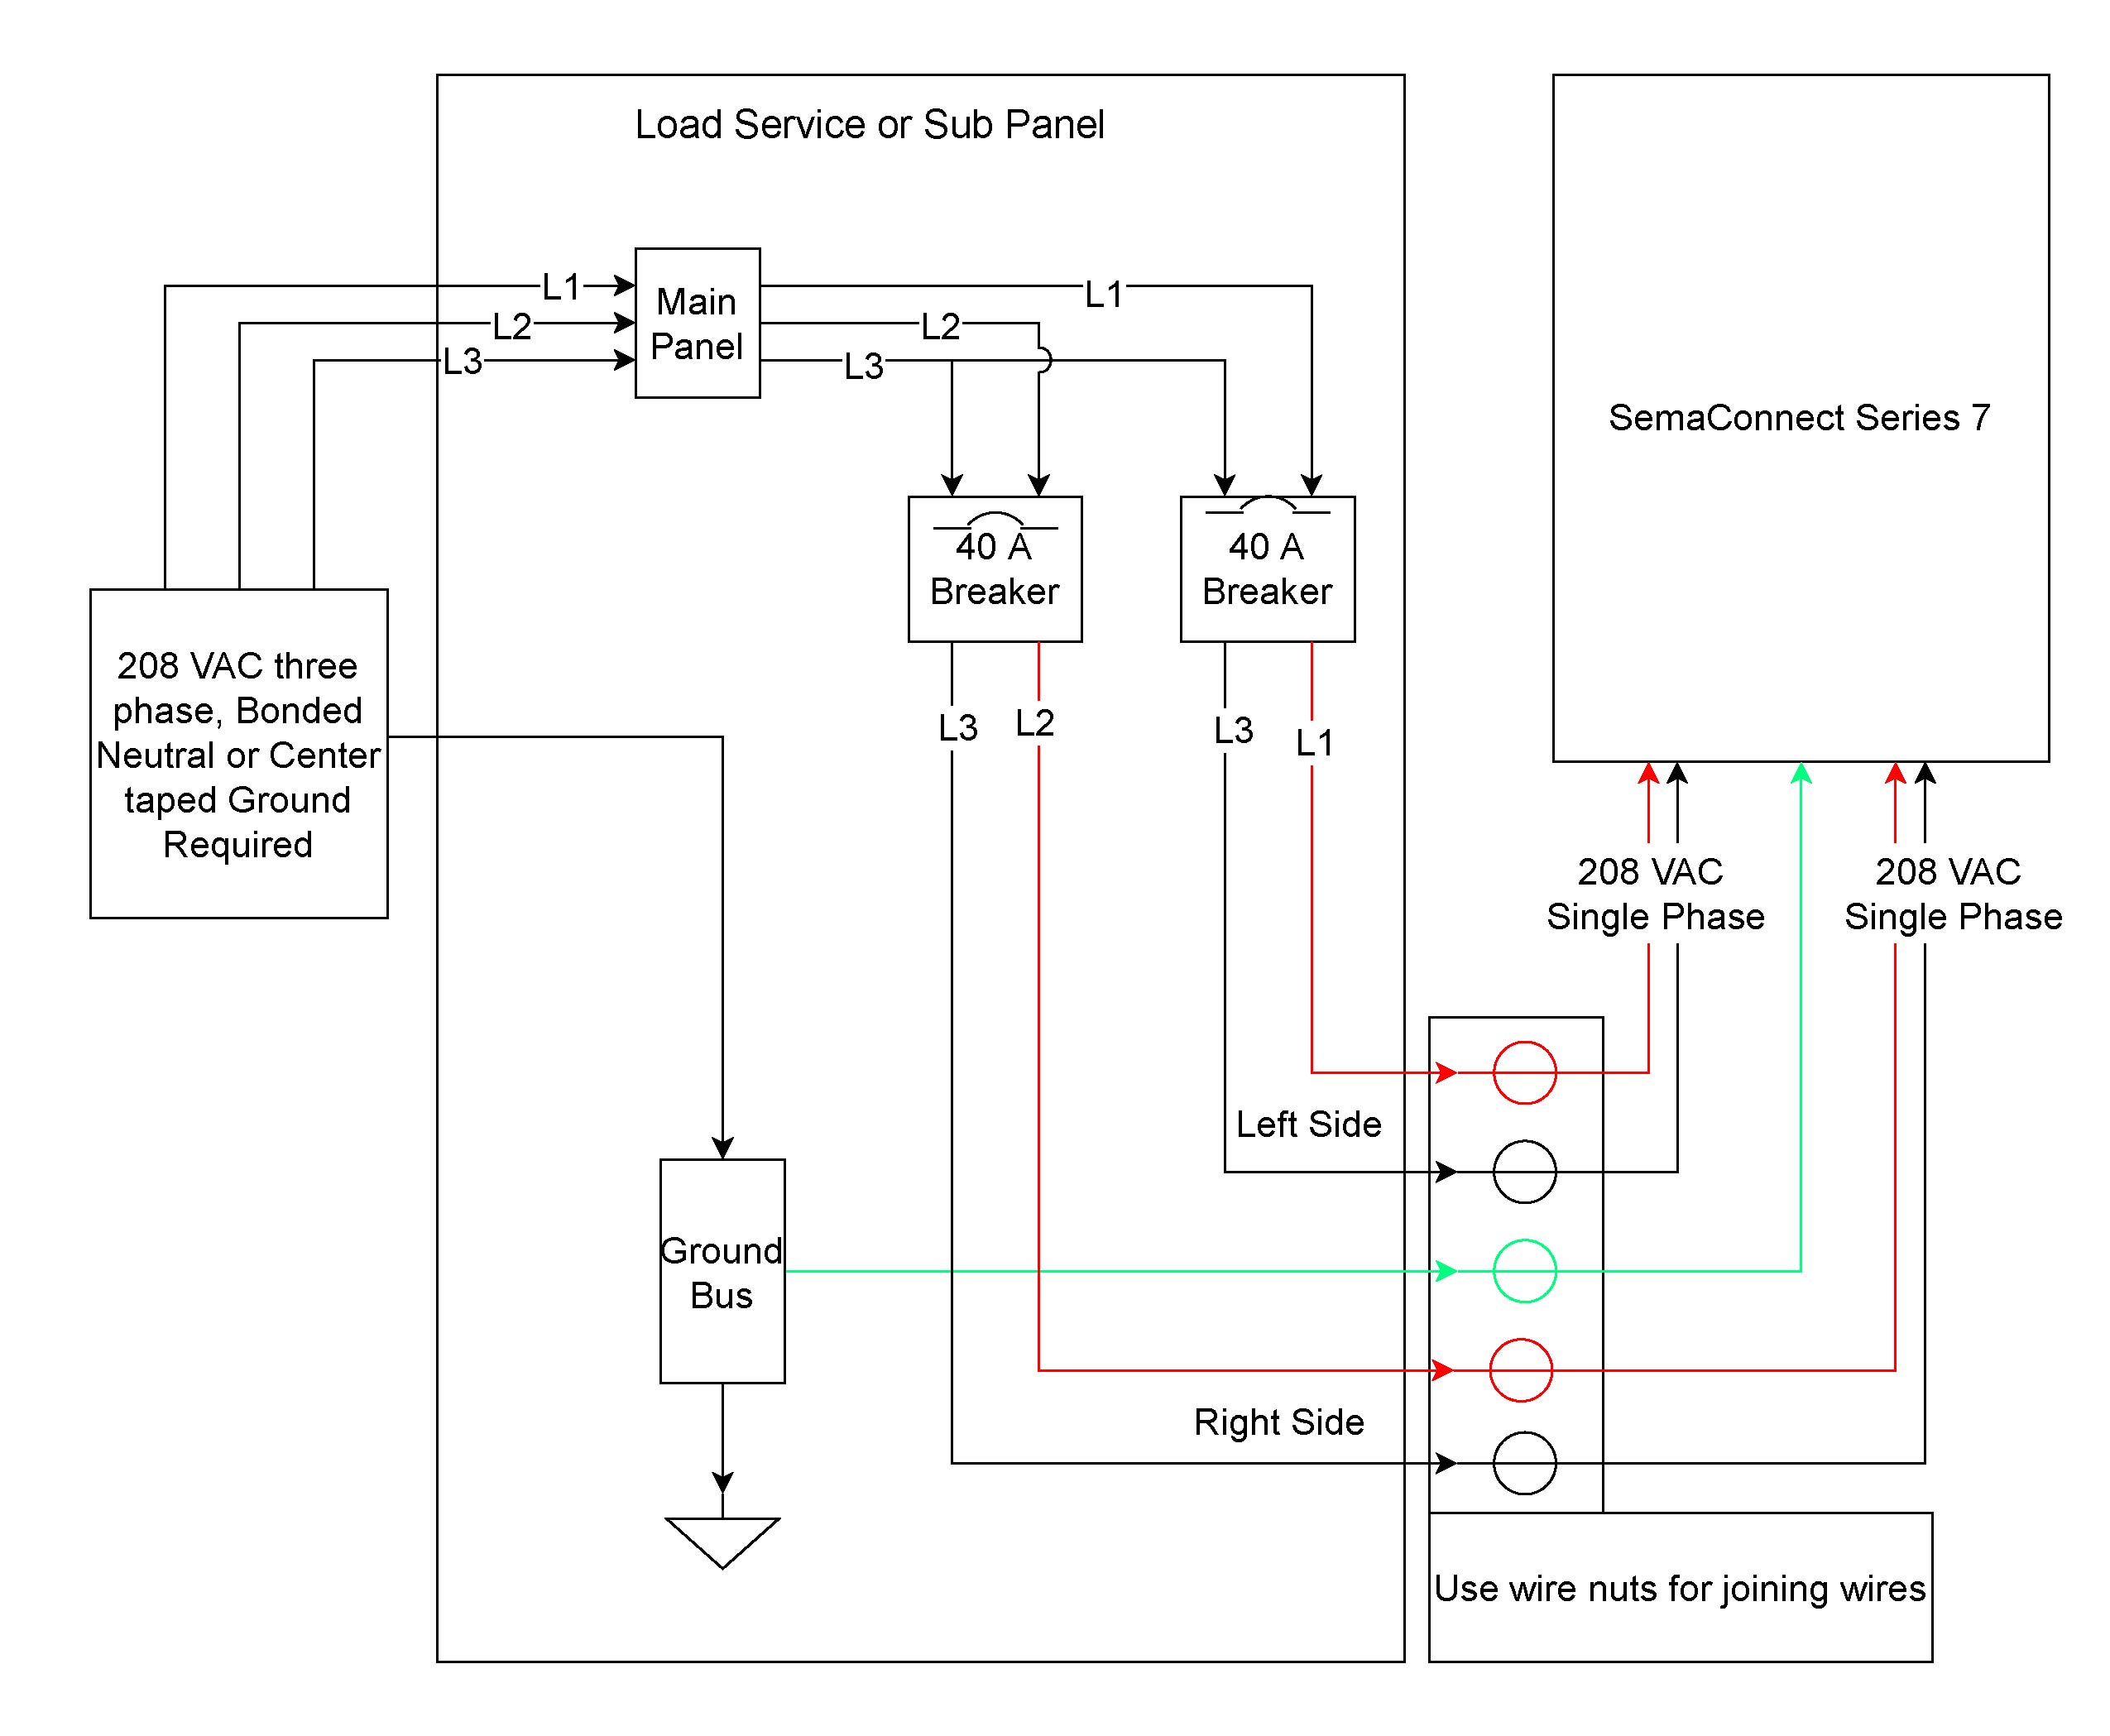 faac 770 wiring diagram